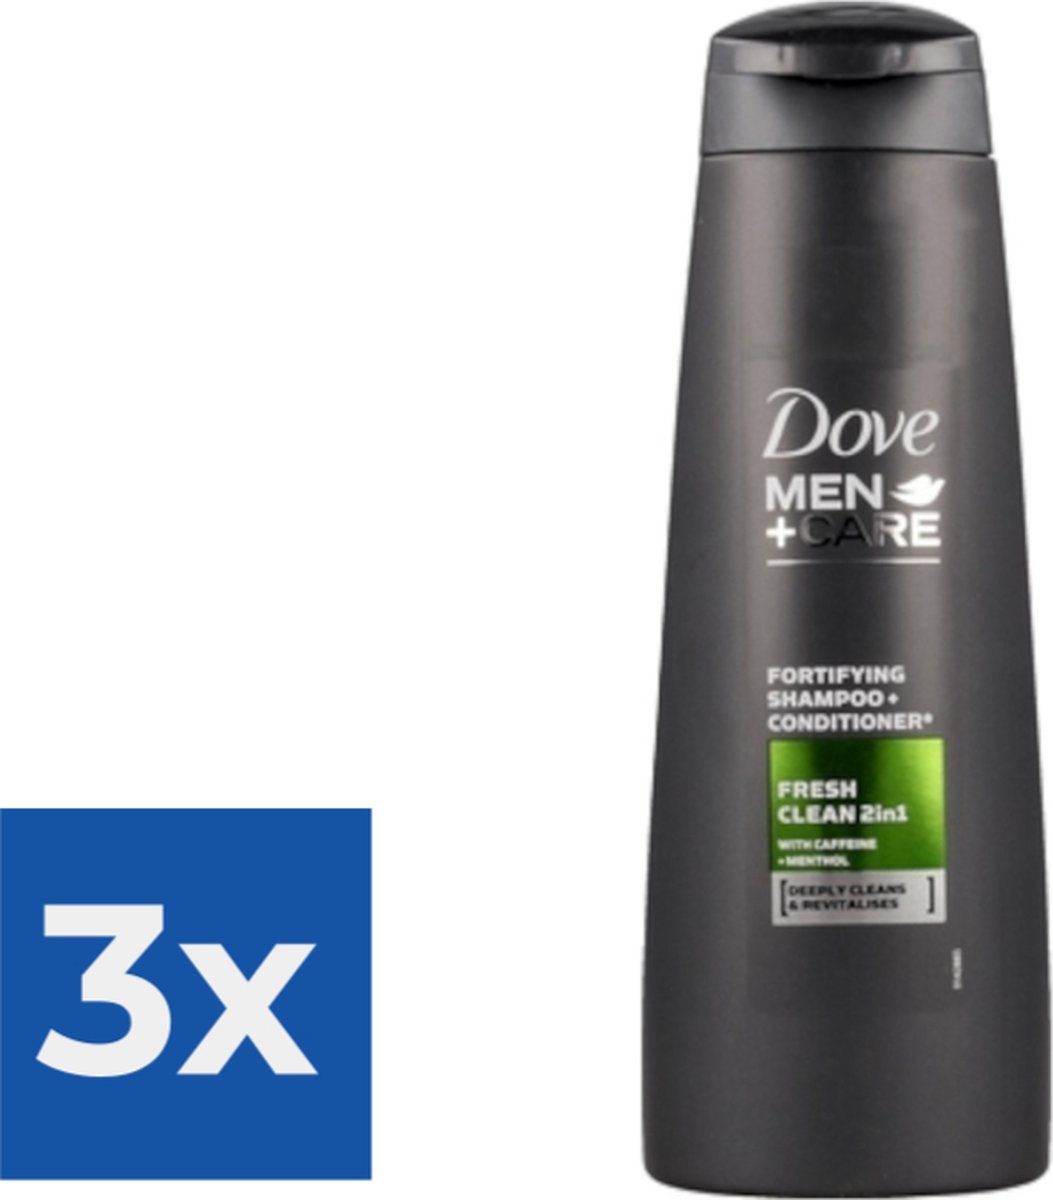 Dove Shampoo Men Care Fresh Clean 2in1 250ML - Voordeelverpakking 3 stuks